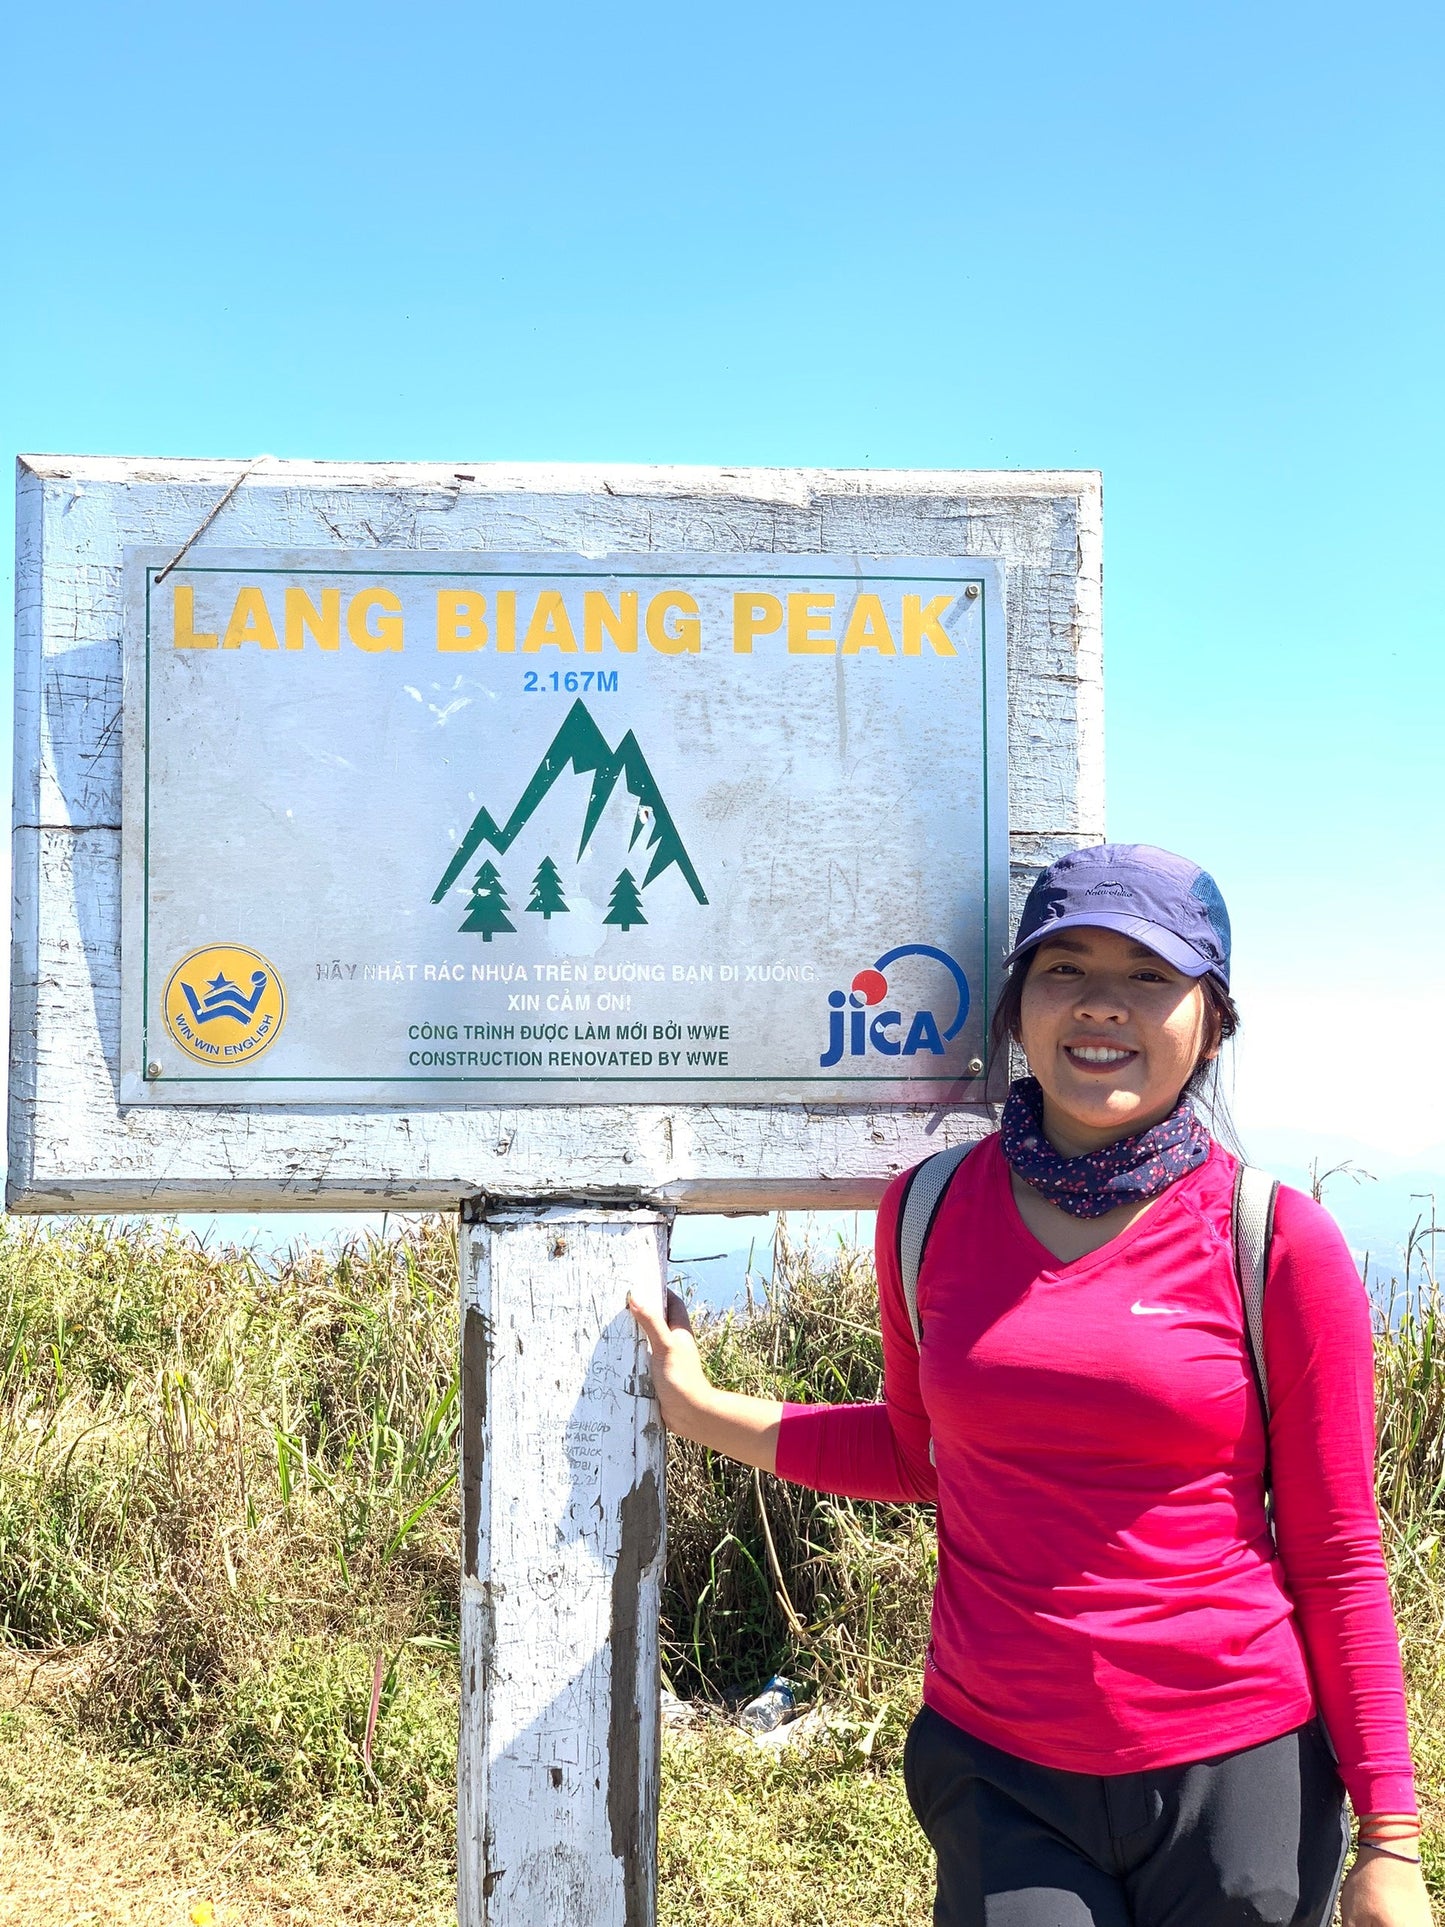 15BR: (Privado-2 DÍAS) Monte Langbiang (2167 m): conquistando el pico de Dalat, presenciando la niebla envolvente